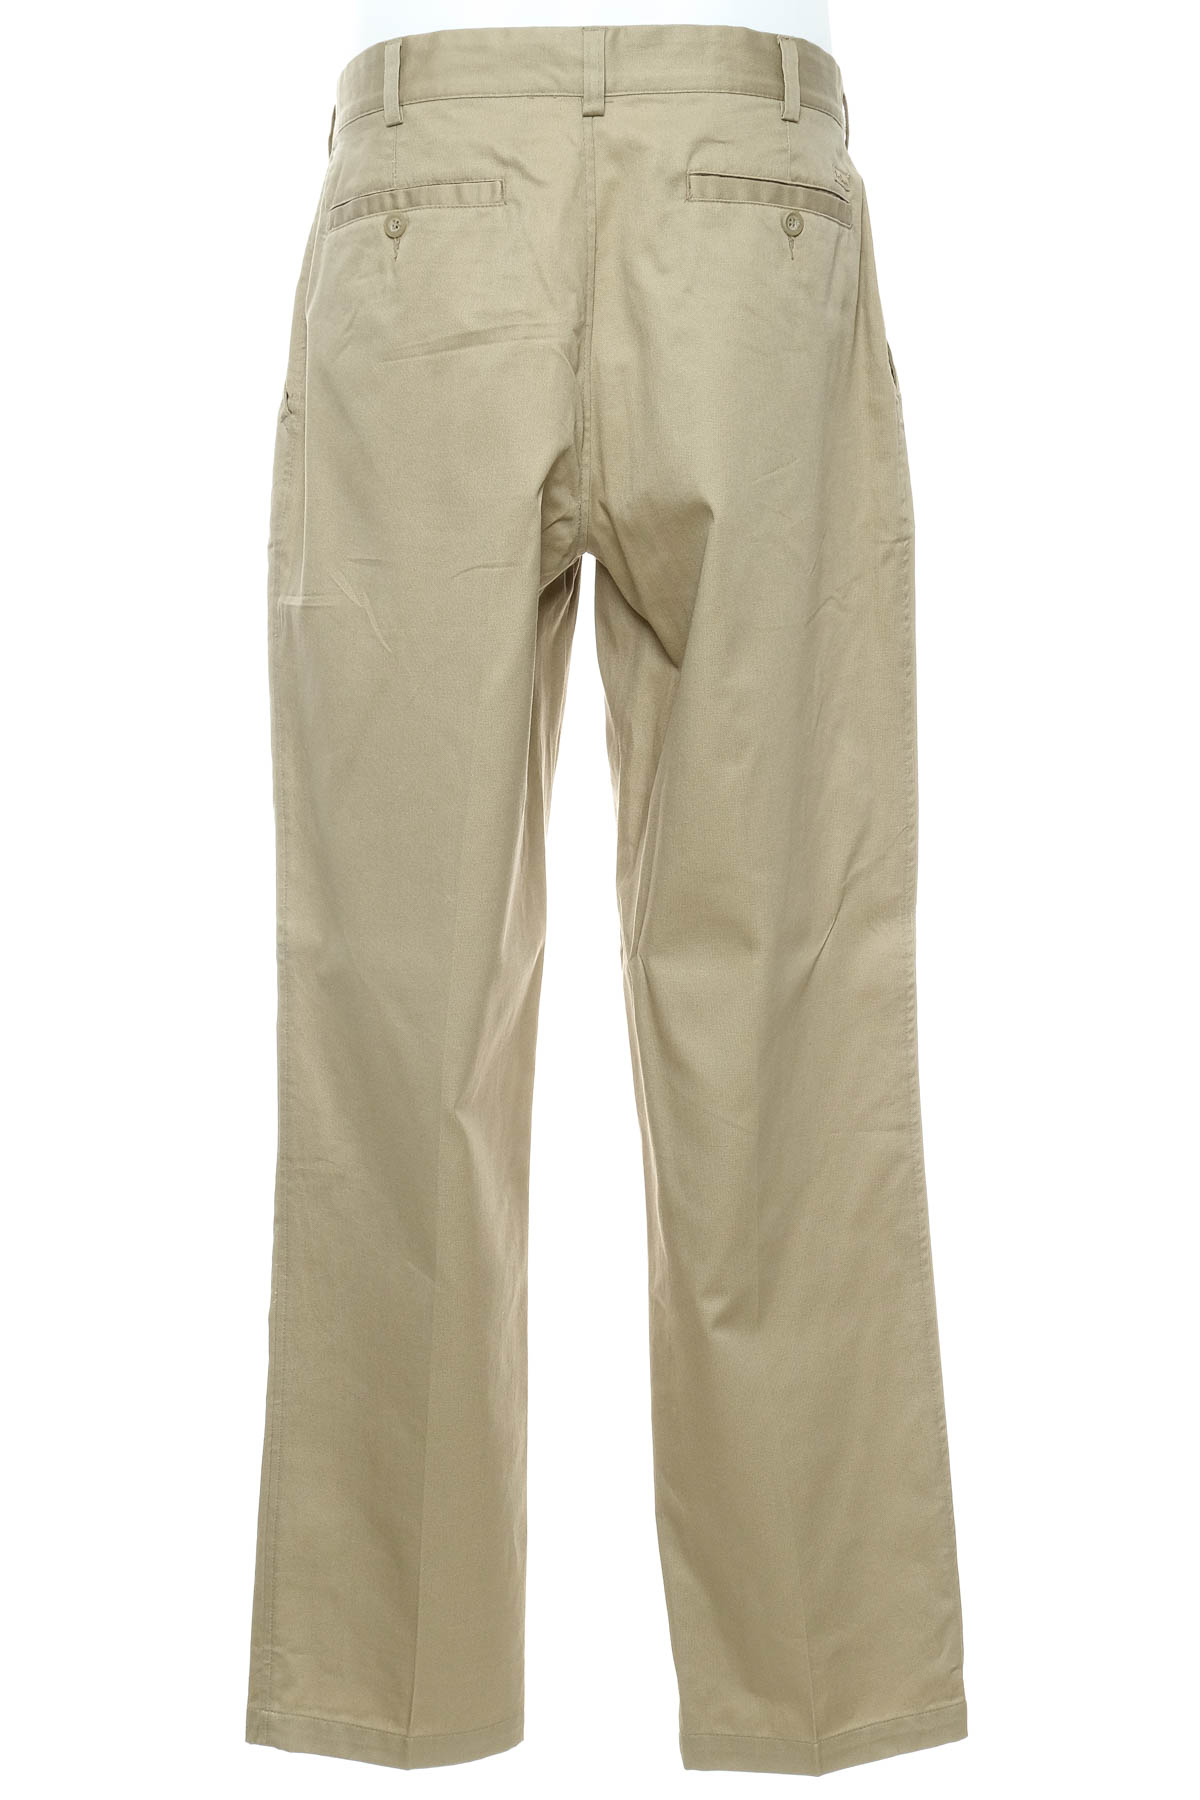 Men's trousers - Port Louis - 1